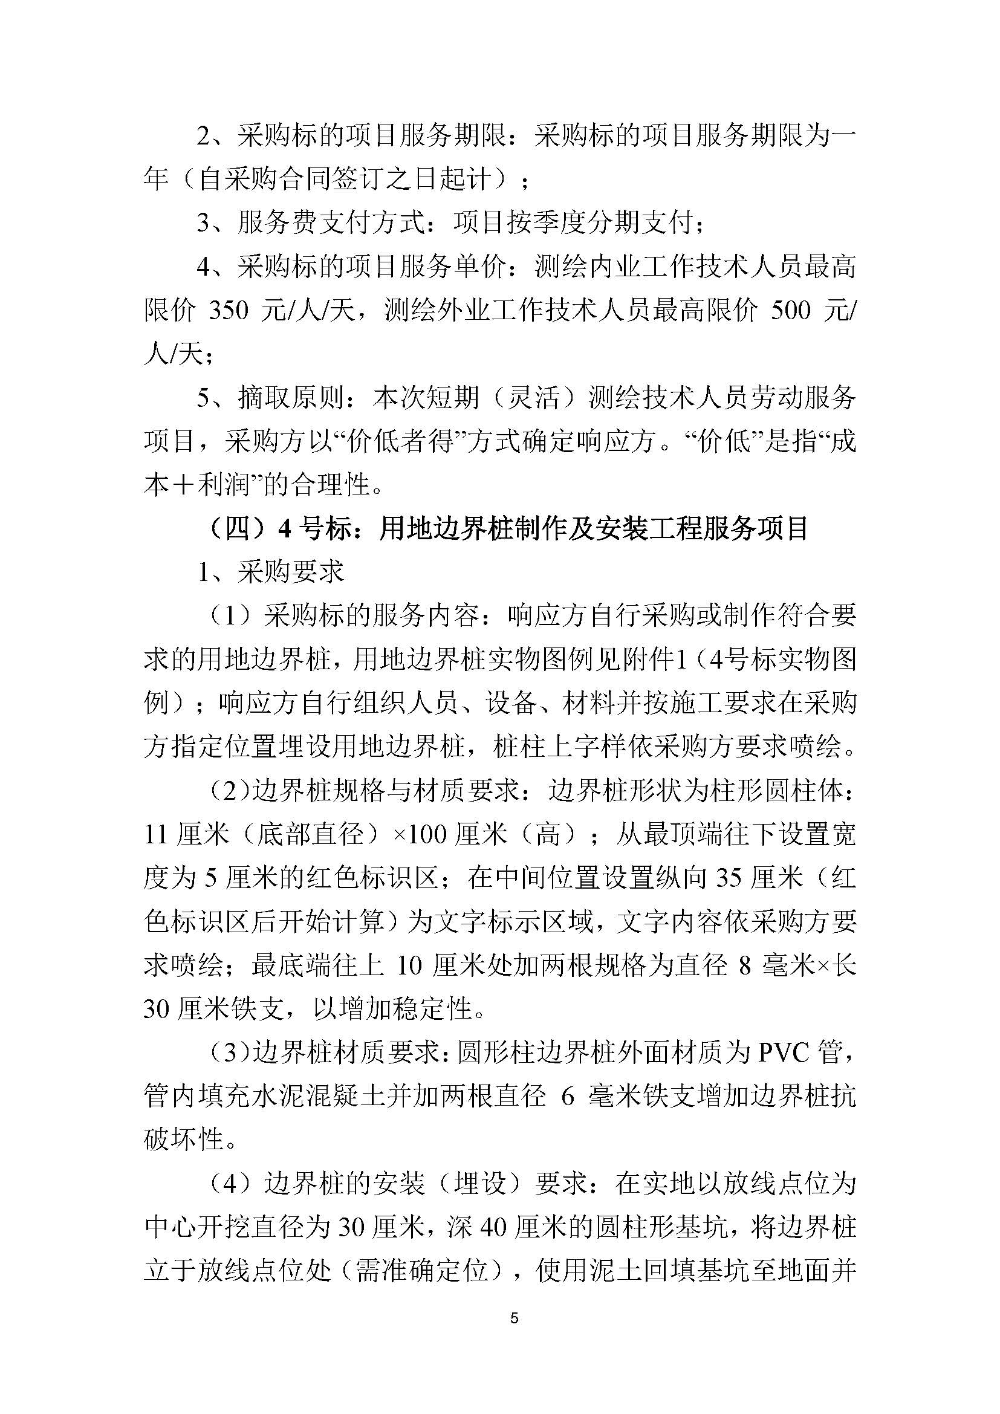 210420江门市国土测绘大队采购计算机设备维修和保养服务等项目采购公告 (5).jpg